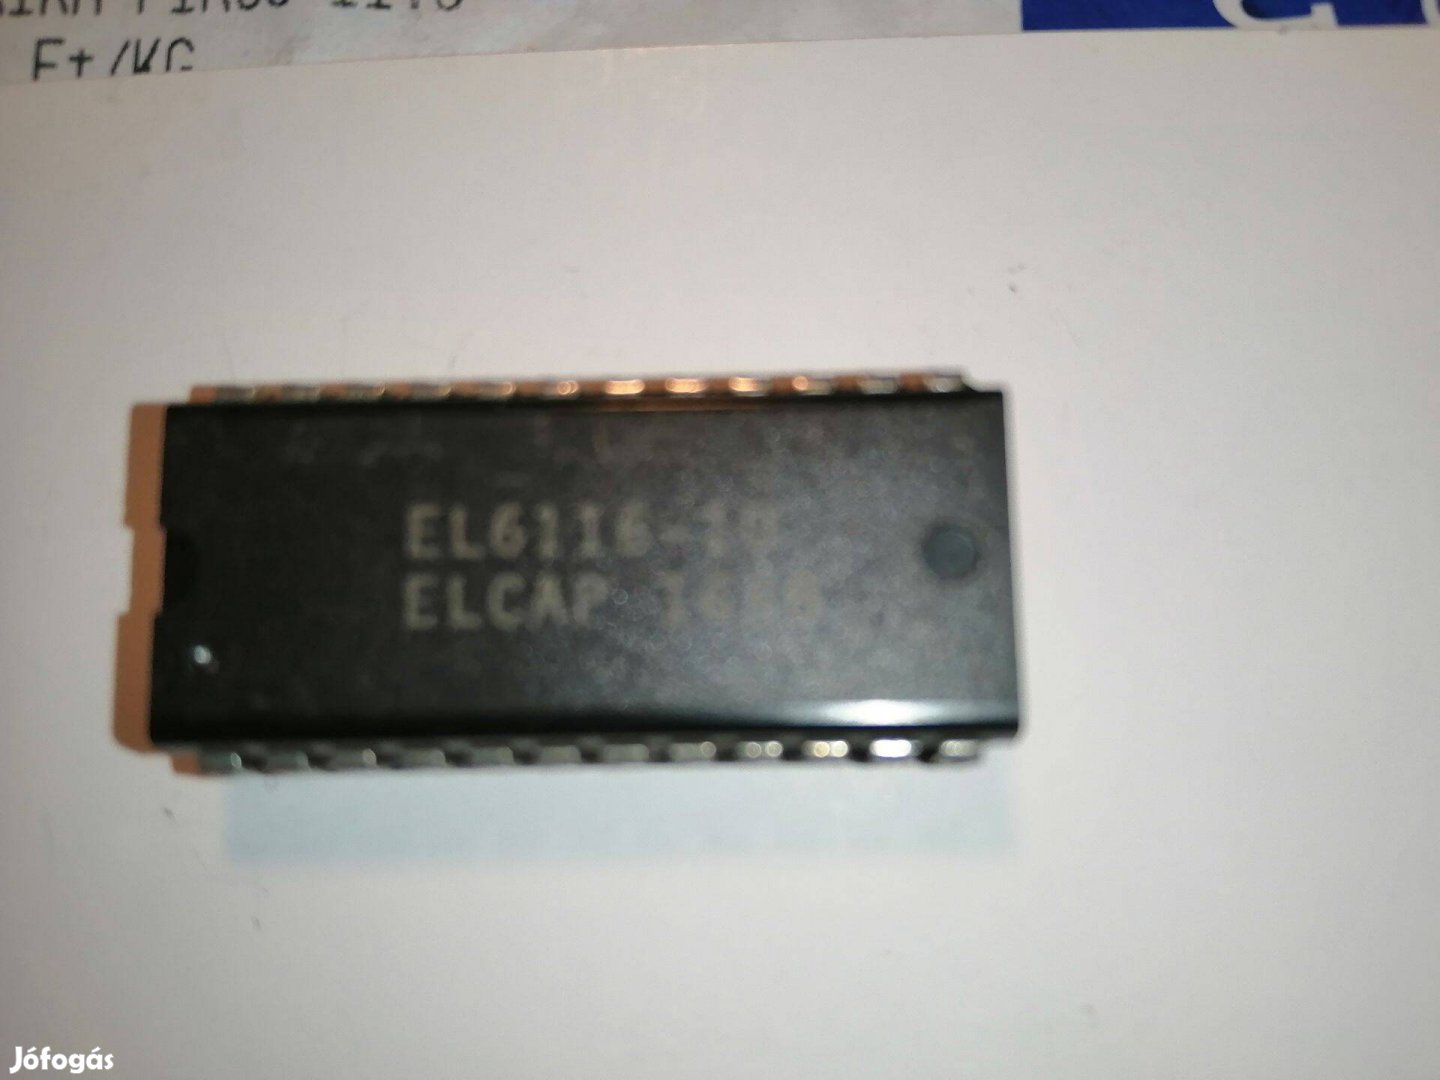 EL6116 -10 Chip